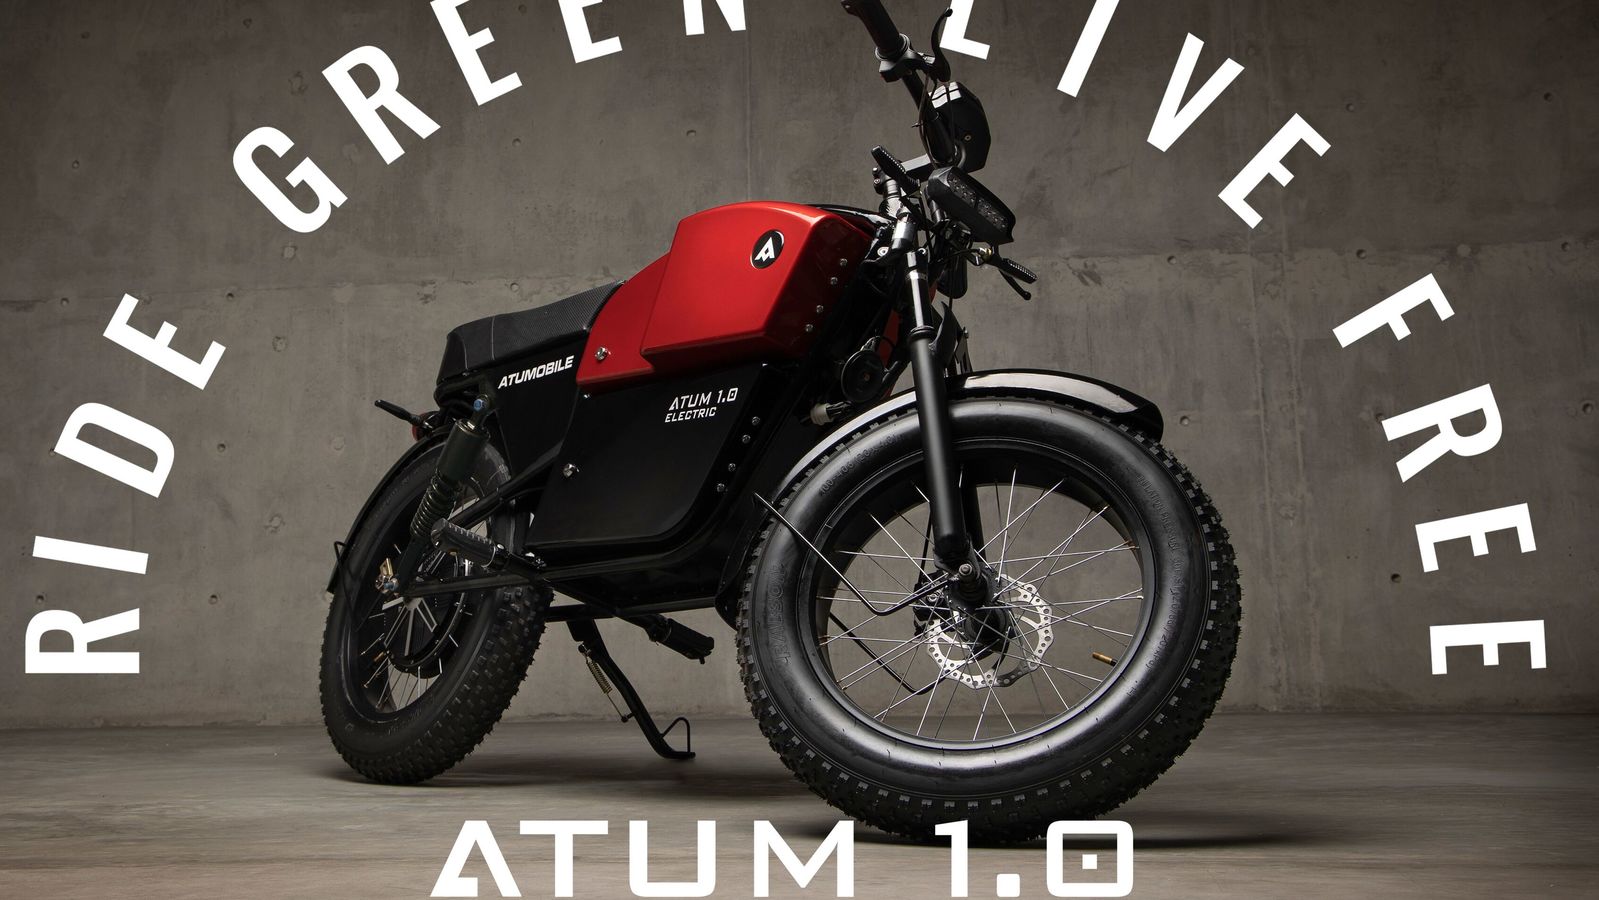 Atumobile's Atum 1.0 cafe racer electric bike receives design patent ... - Atum RiDe Green 1627470422383 1627470436405